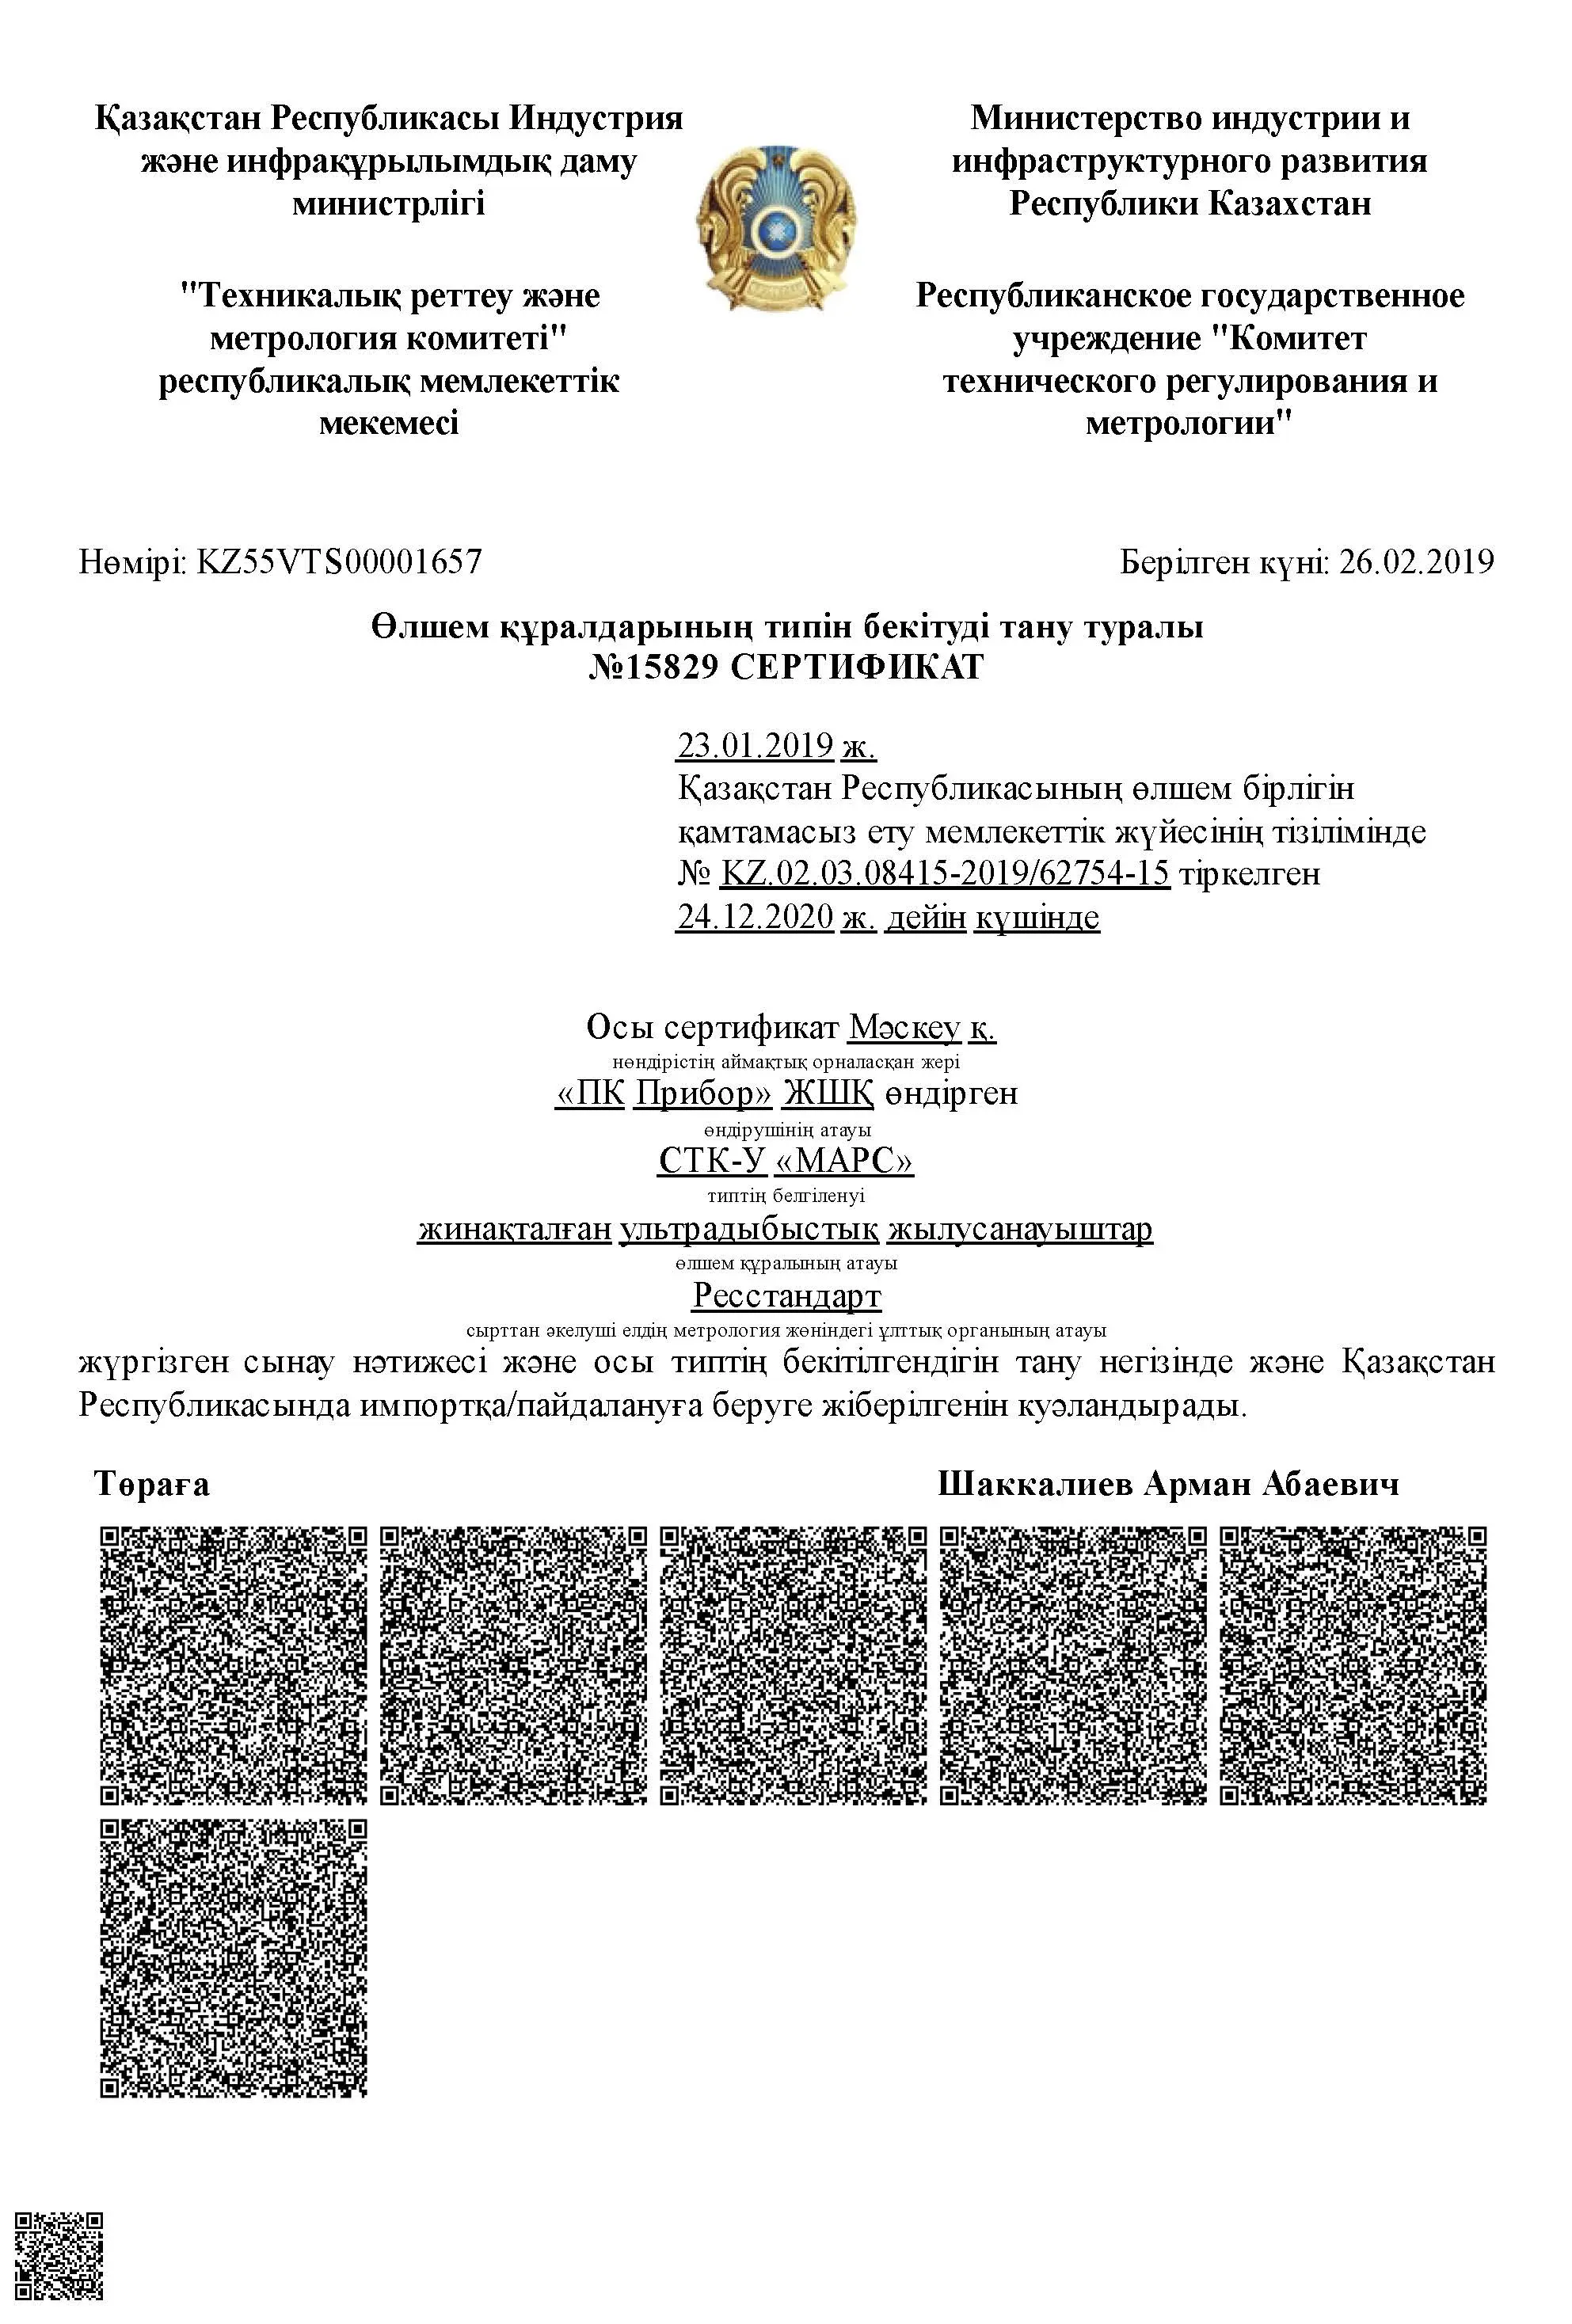 Сертификат о признании утверждения типа СТК-У МАРС, Казахстан, до 24.12.2020 (kz) (архив, см. свидетельство Декаст)